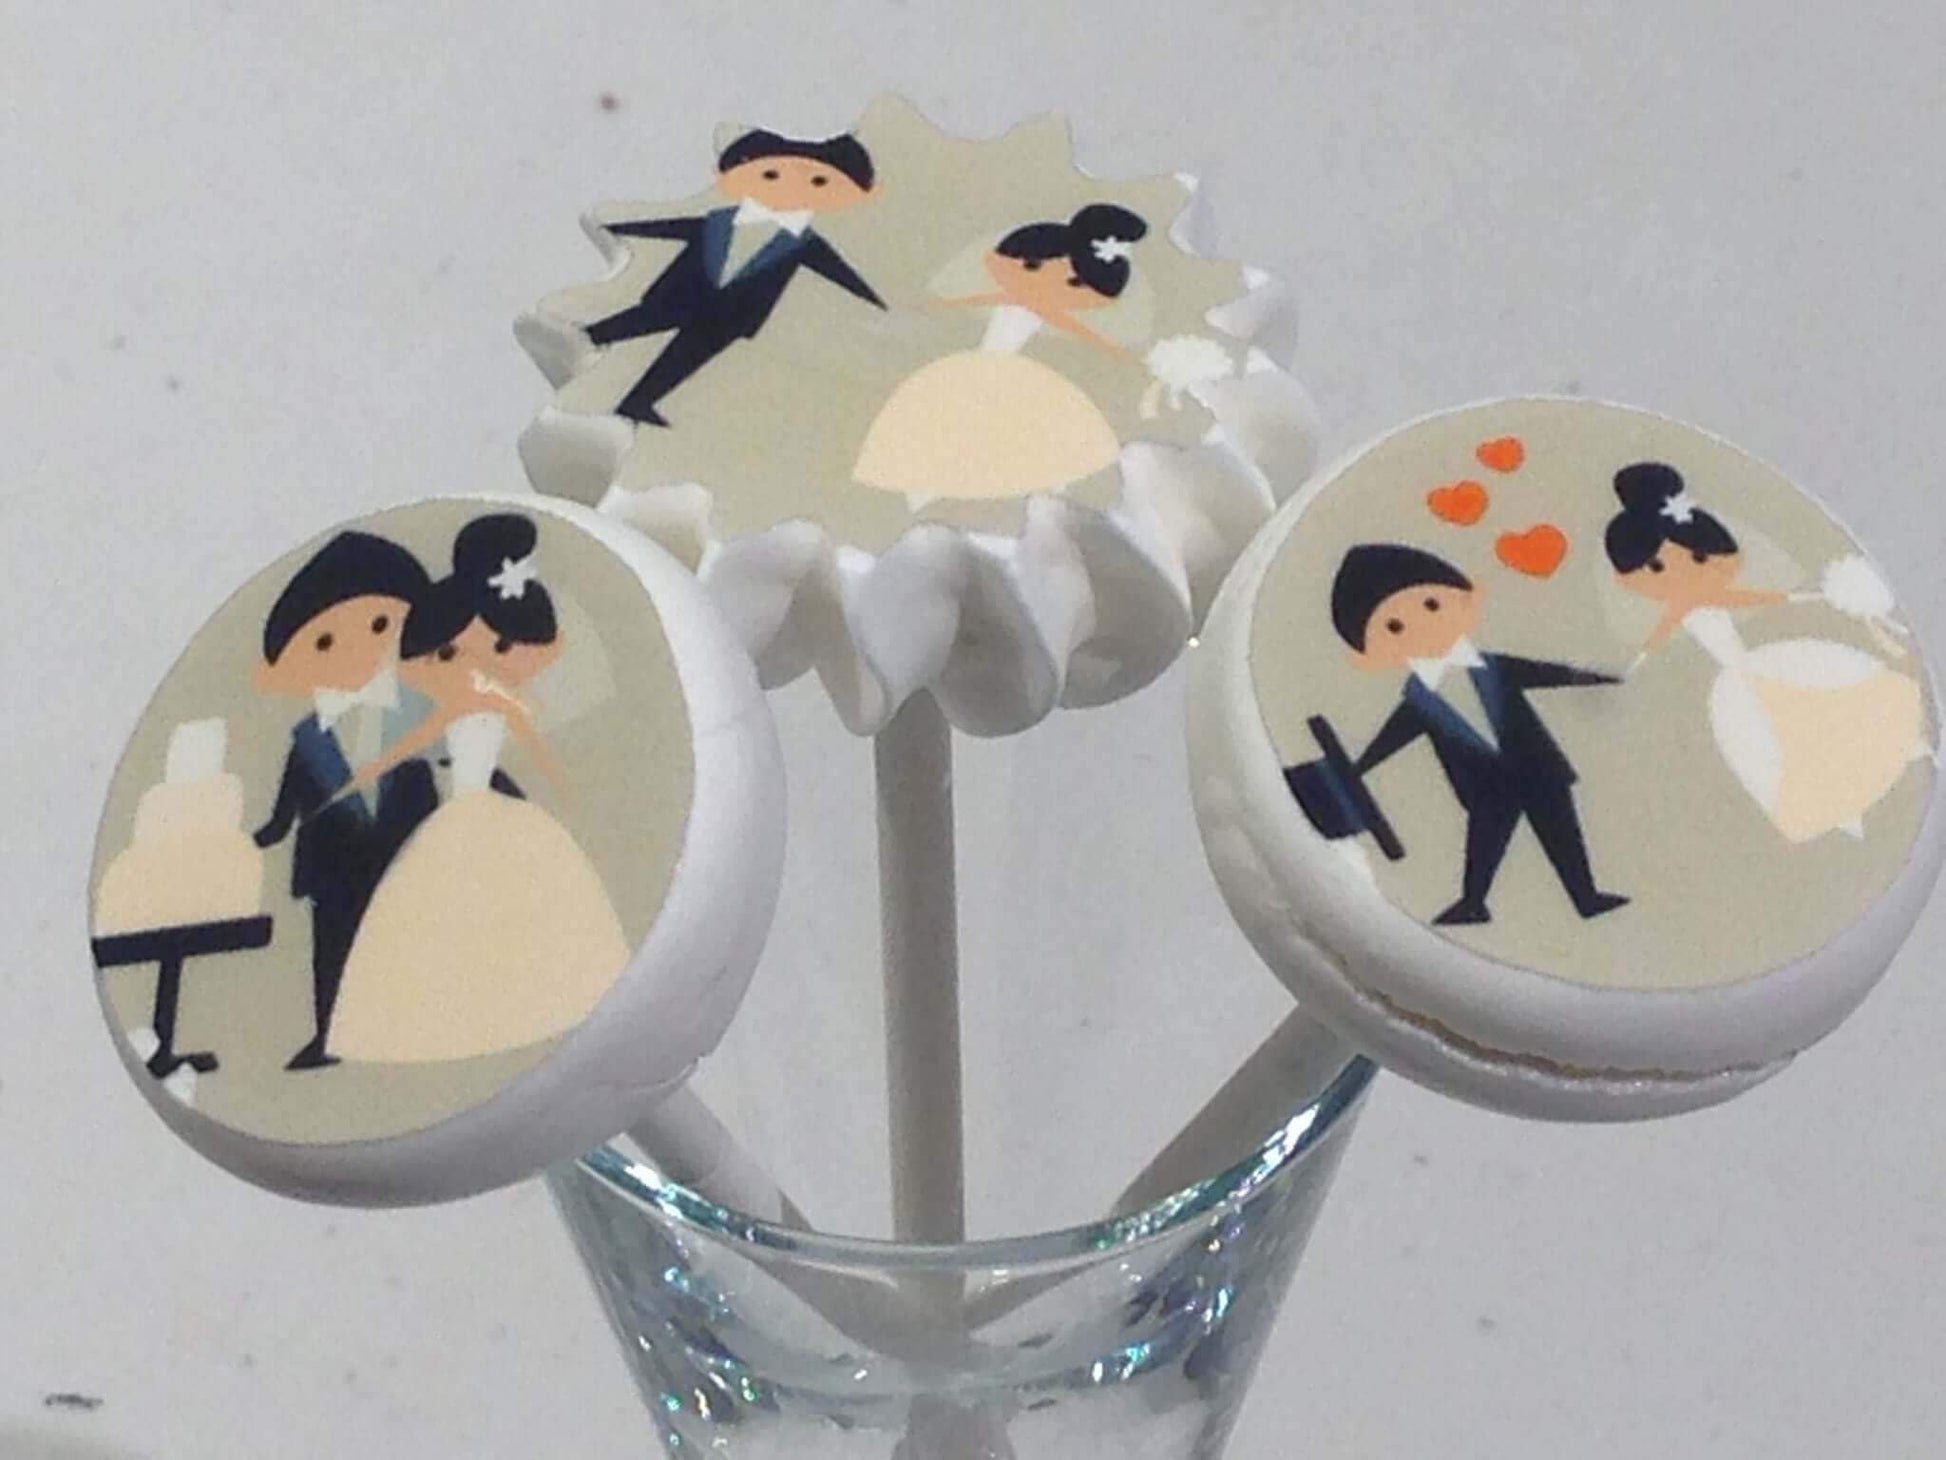 Wedding Couples - 1.5 inch - SA51-Sugar Stamp sheets-Sugar Art